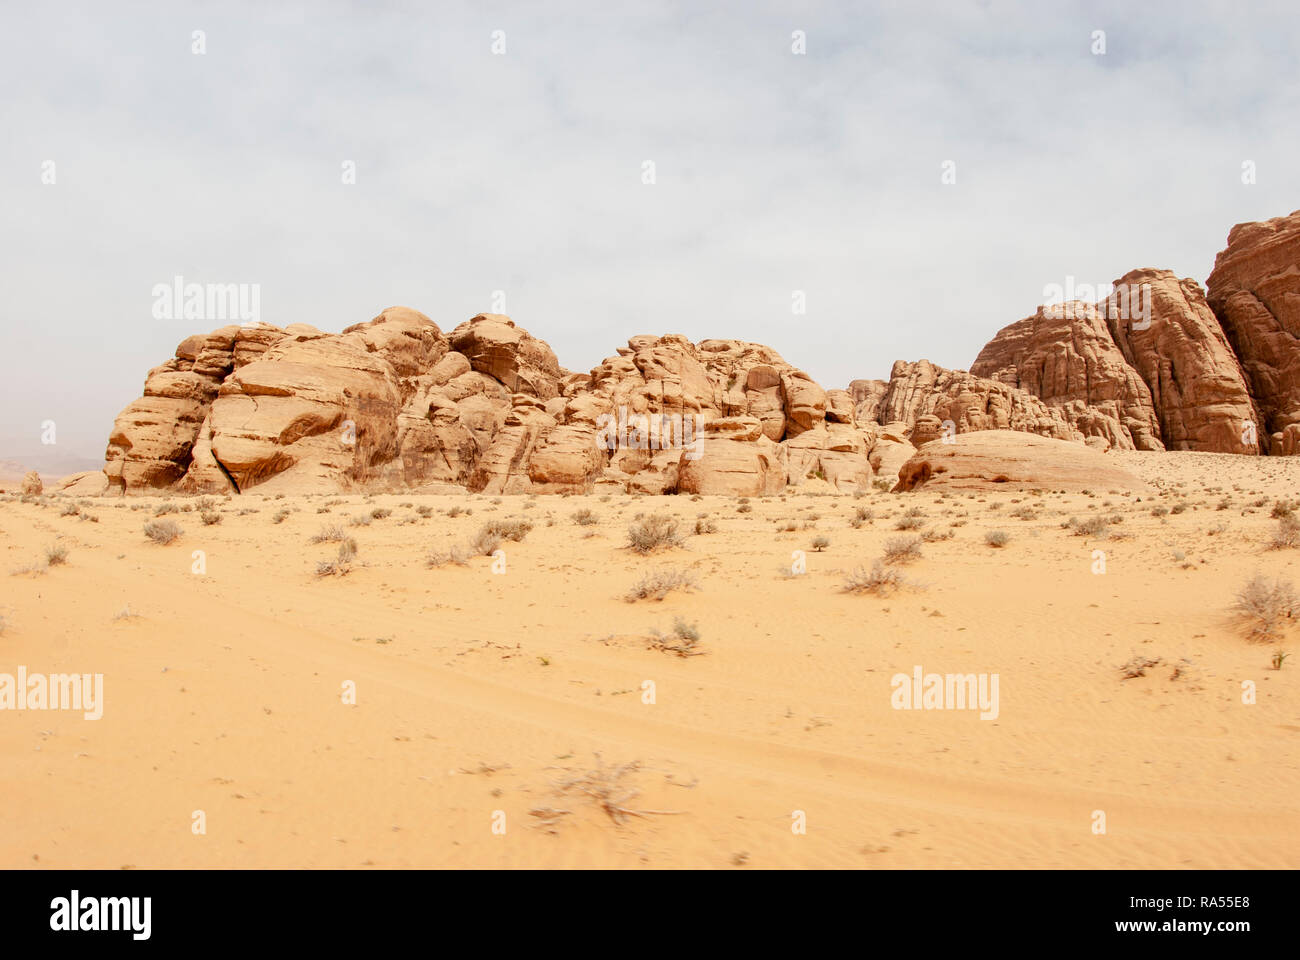 Wadi Rum, Jordan in April Stock Photo 